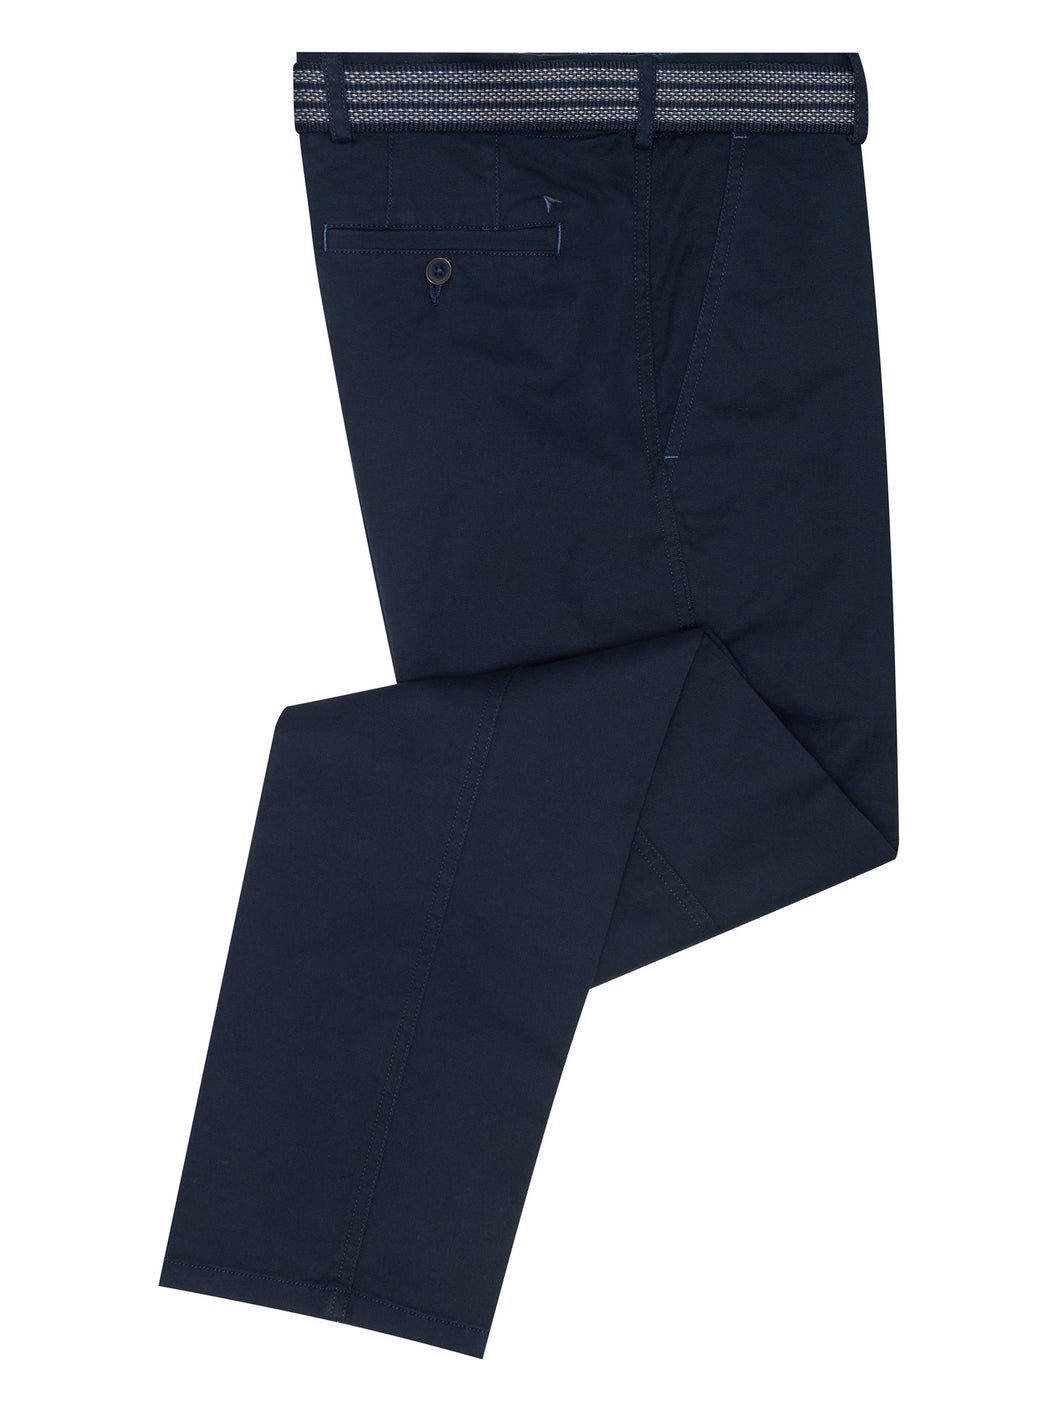 D & G Drifter navy cotton trousers